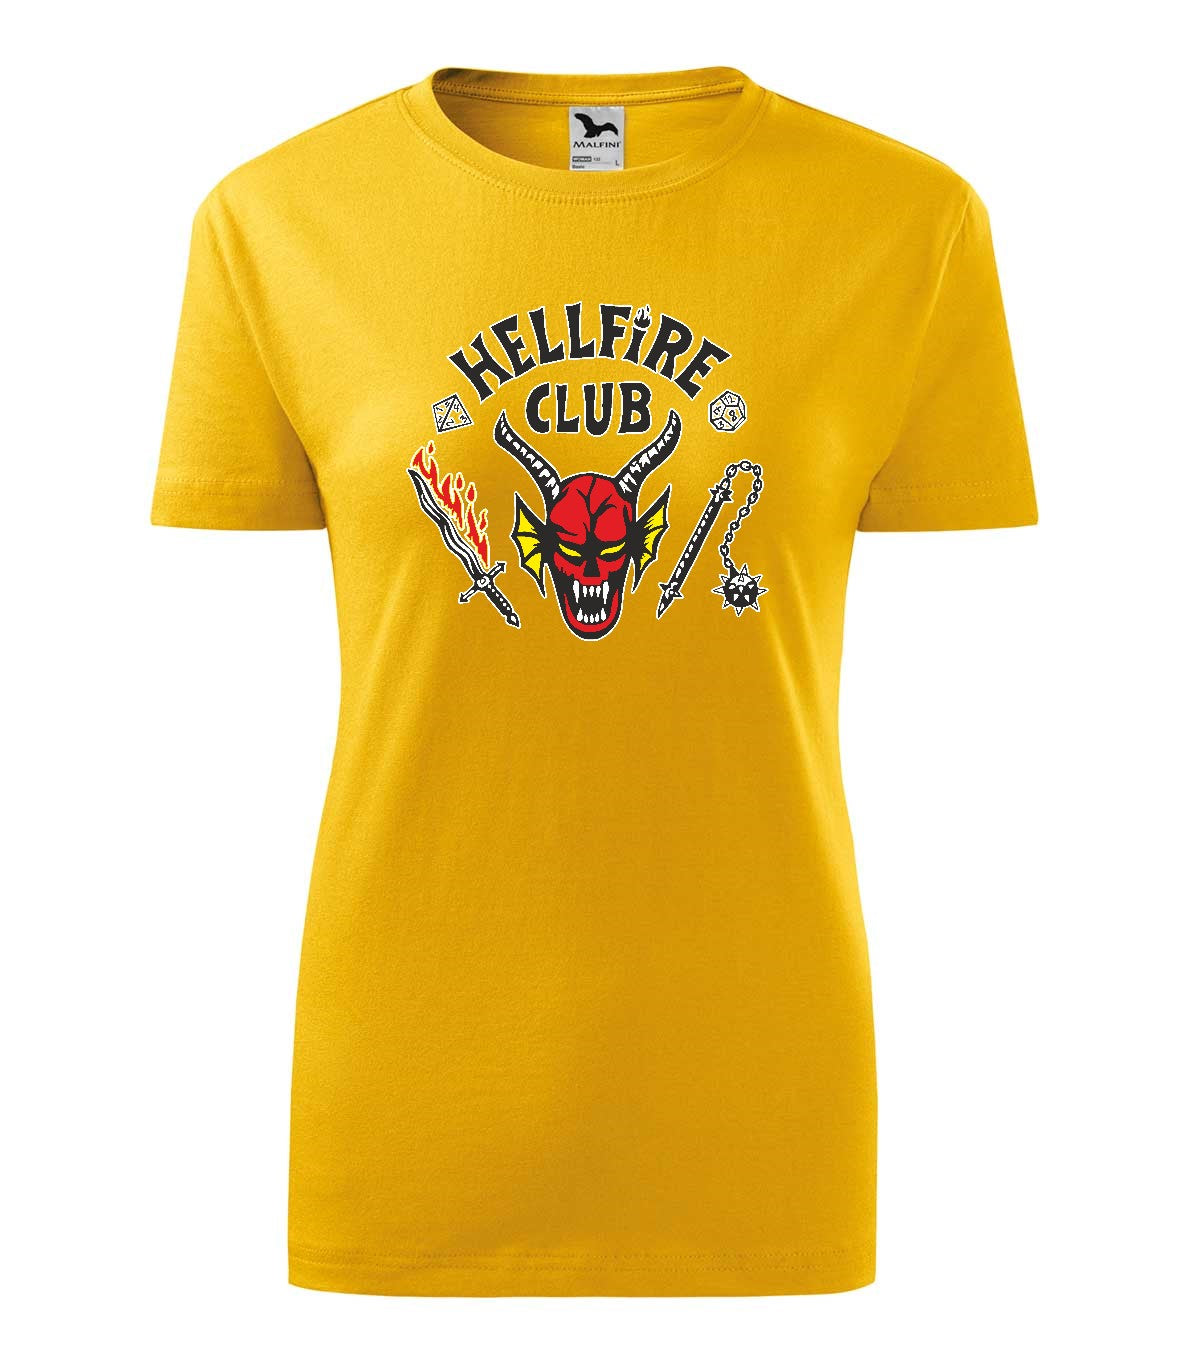 Hellfire Club gyerek technikai póló